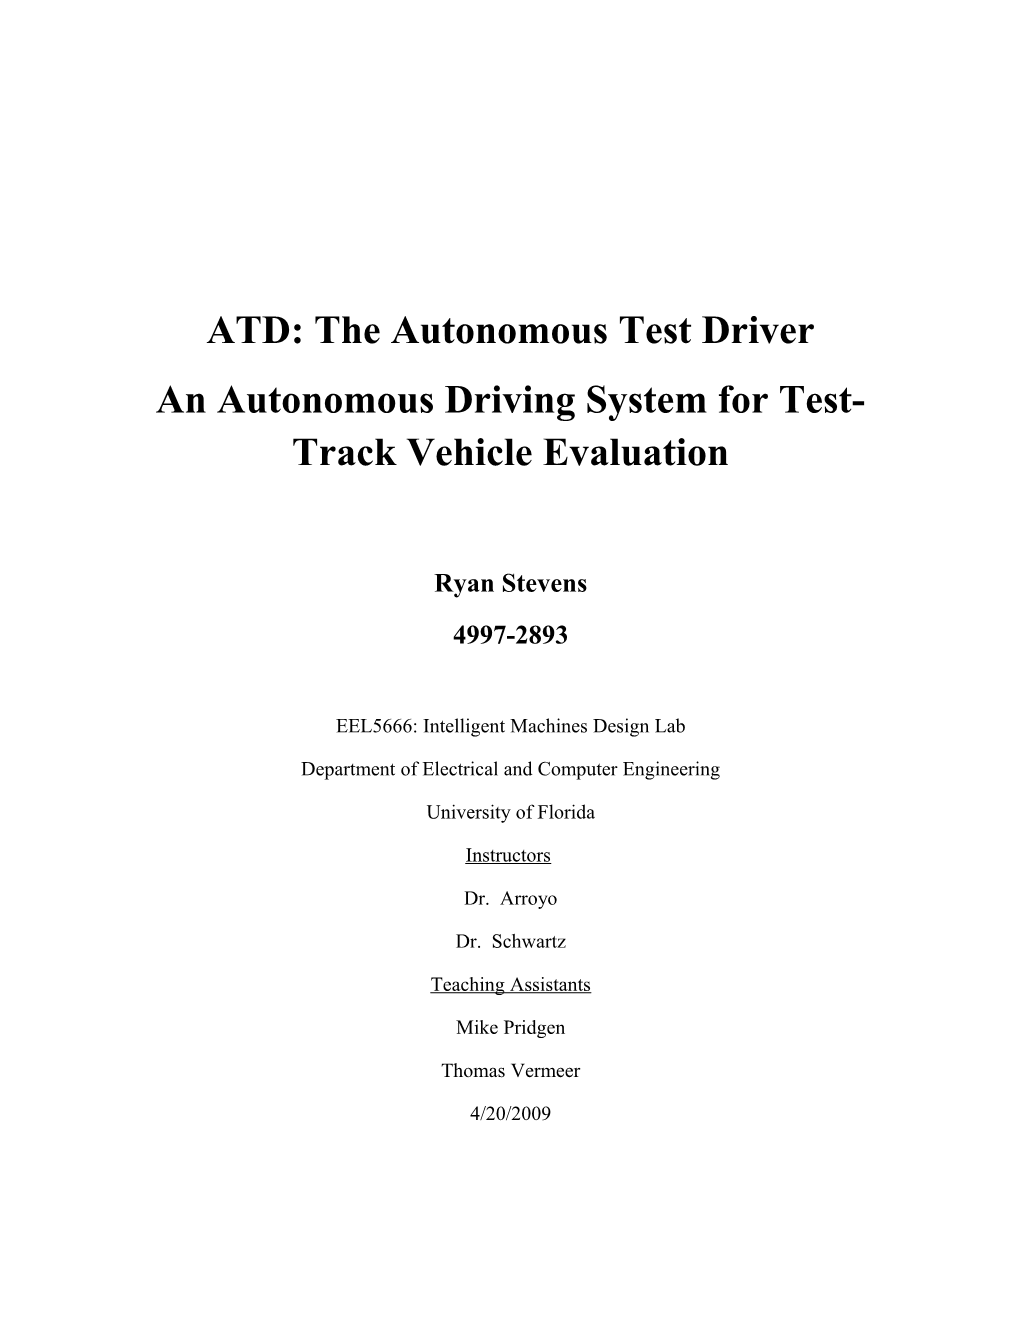 ATD: the Autonomous Test Driver